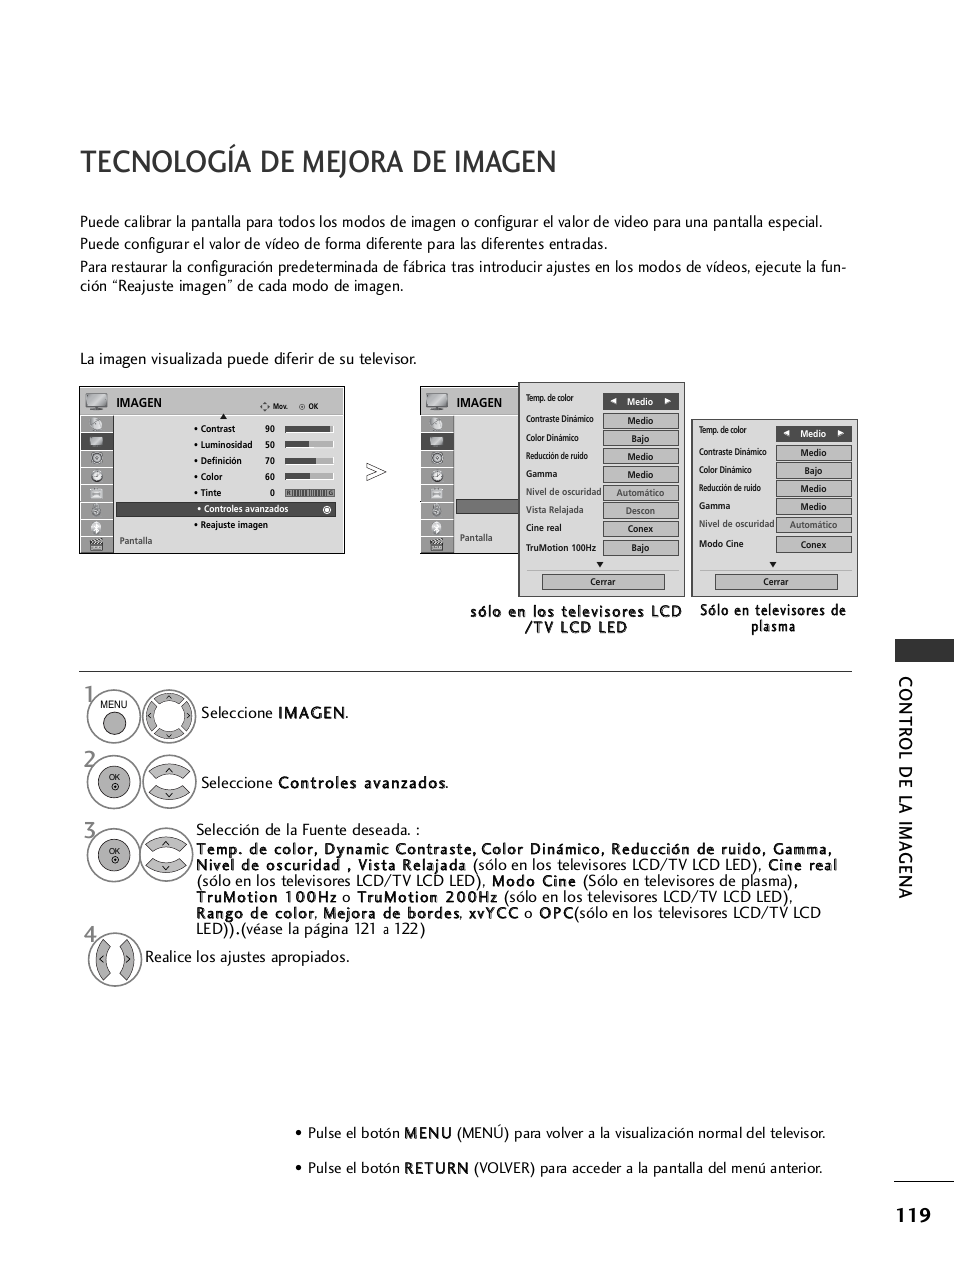 Tecnología de mejora de imagen, Contr ol de la ima gena | LG 32LH40 Manual del usuario | Página 121 / 180